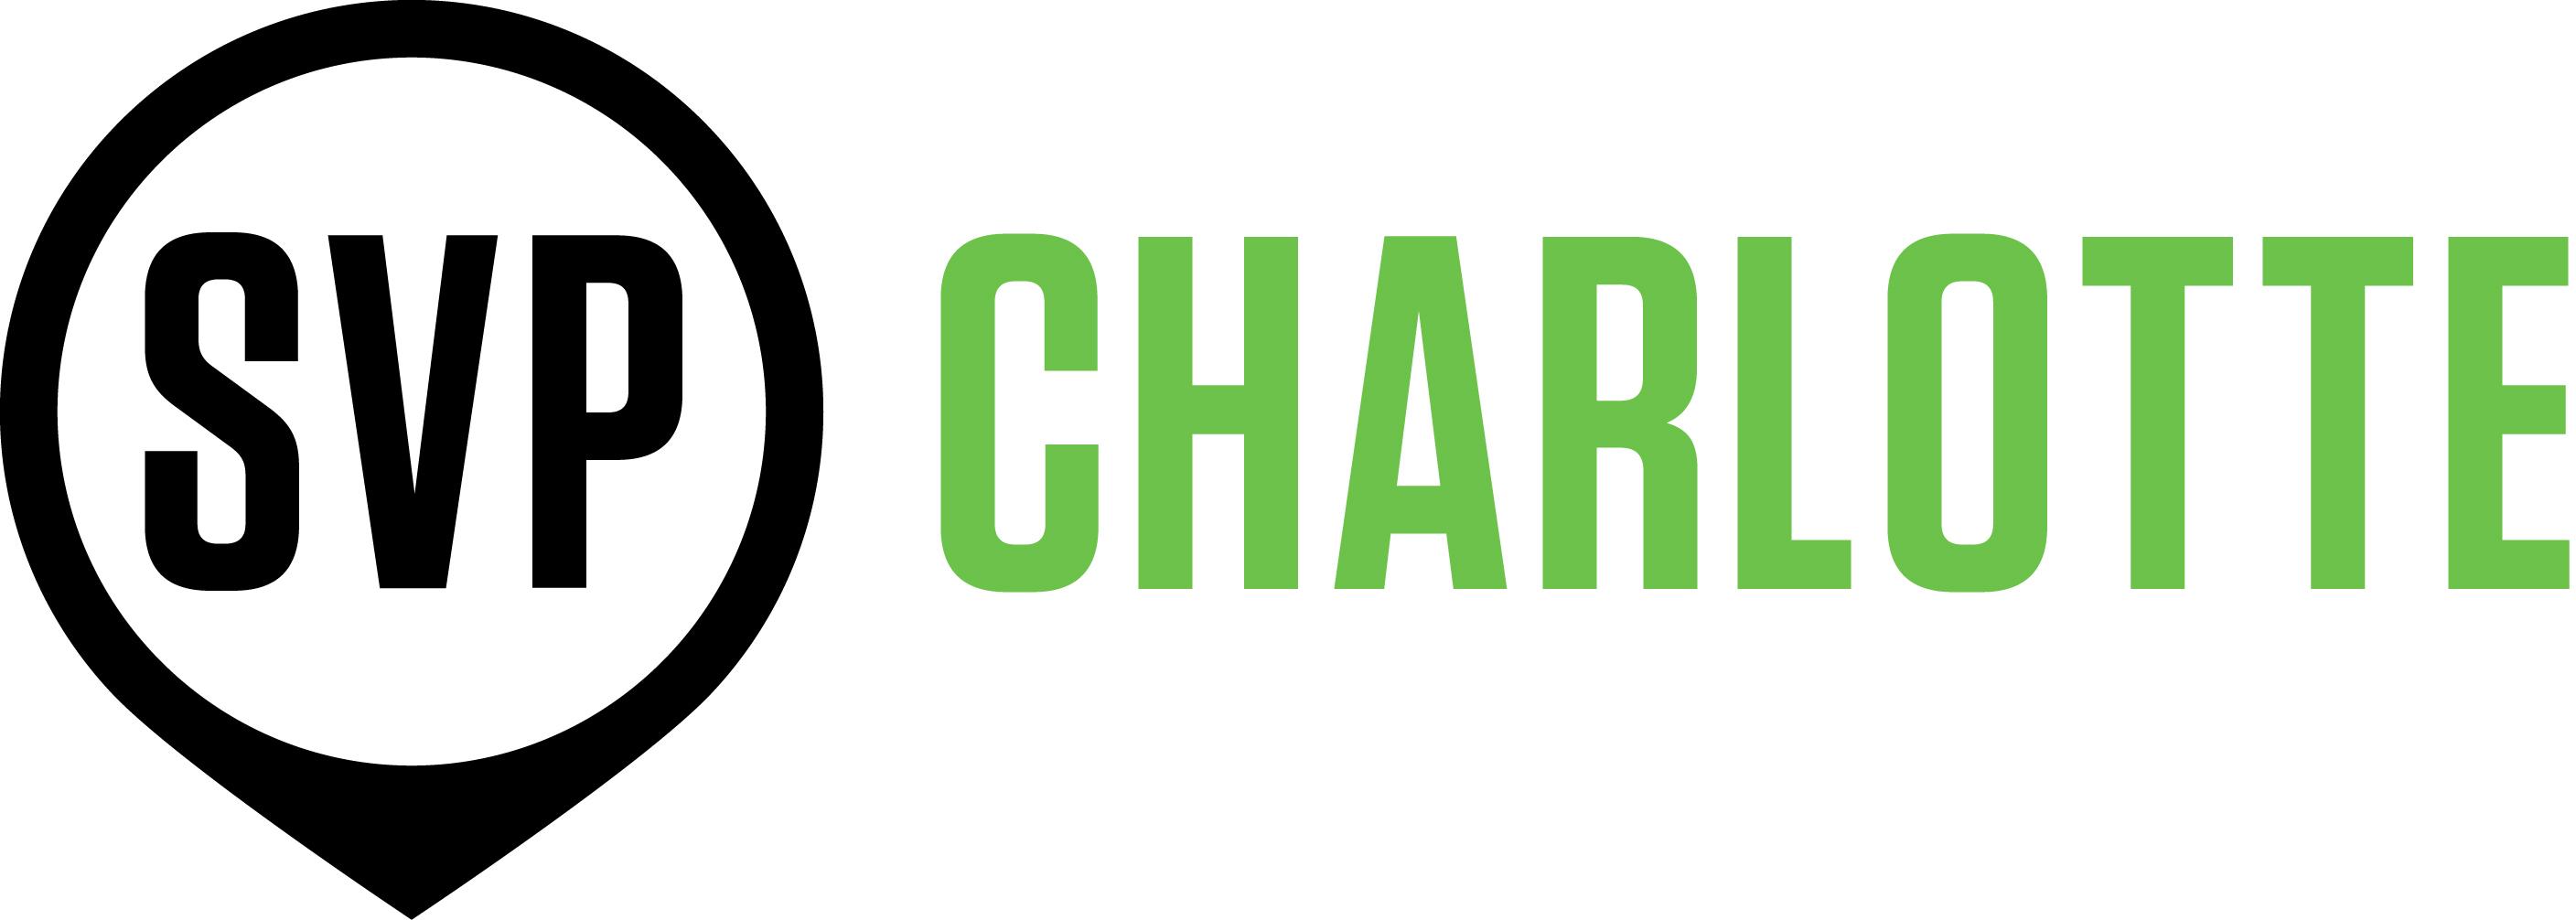 Charlotte Logo - SVP Charlotte » SVP Charlotte Logo